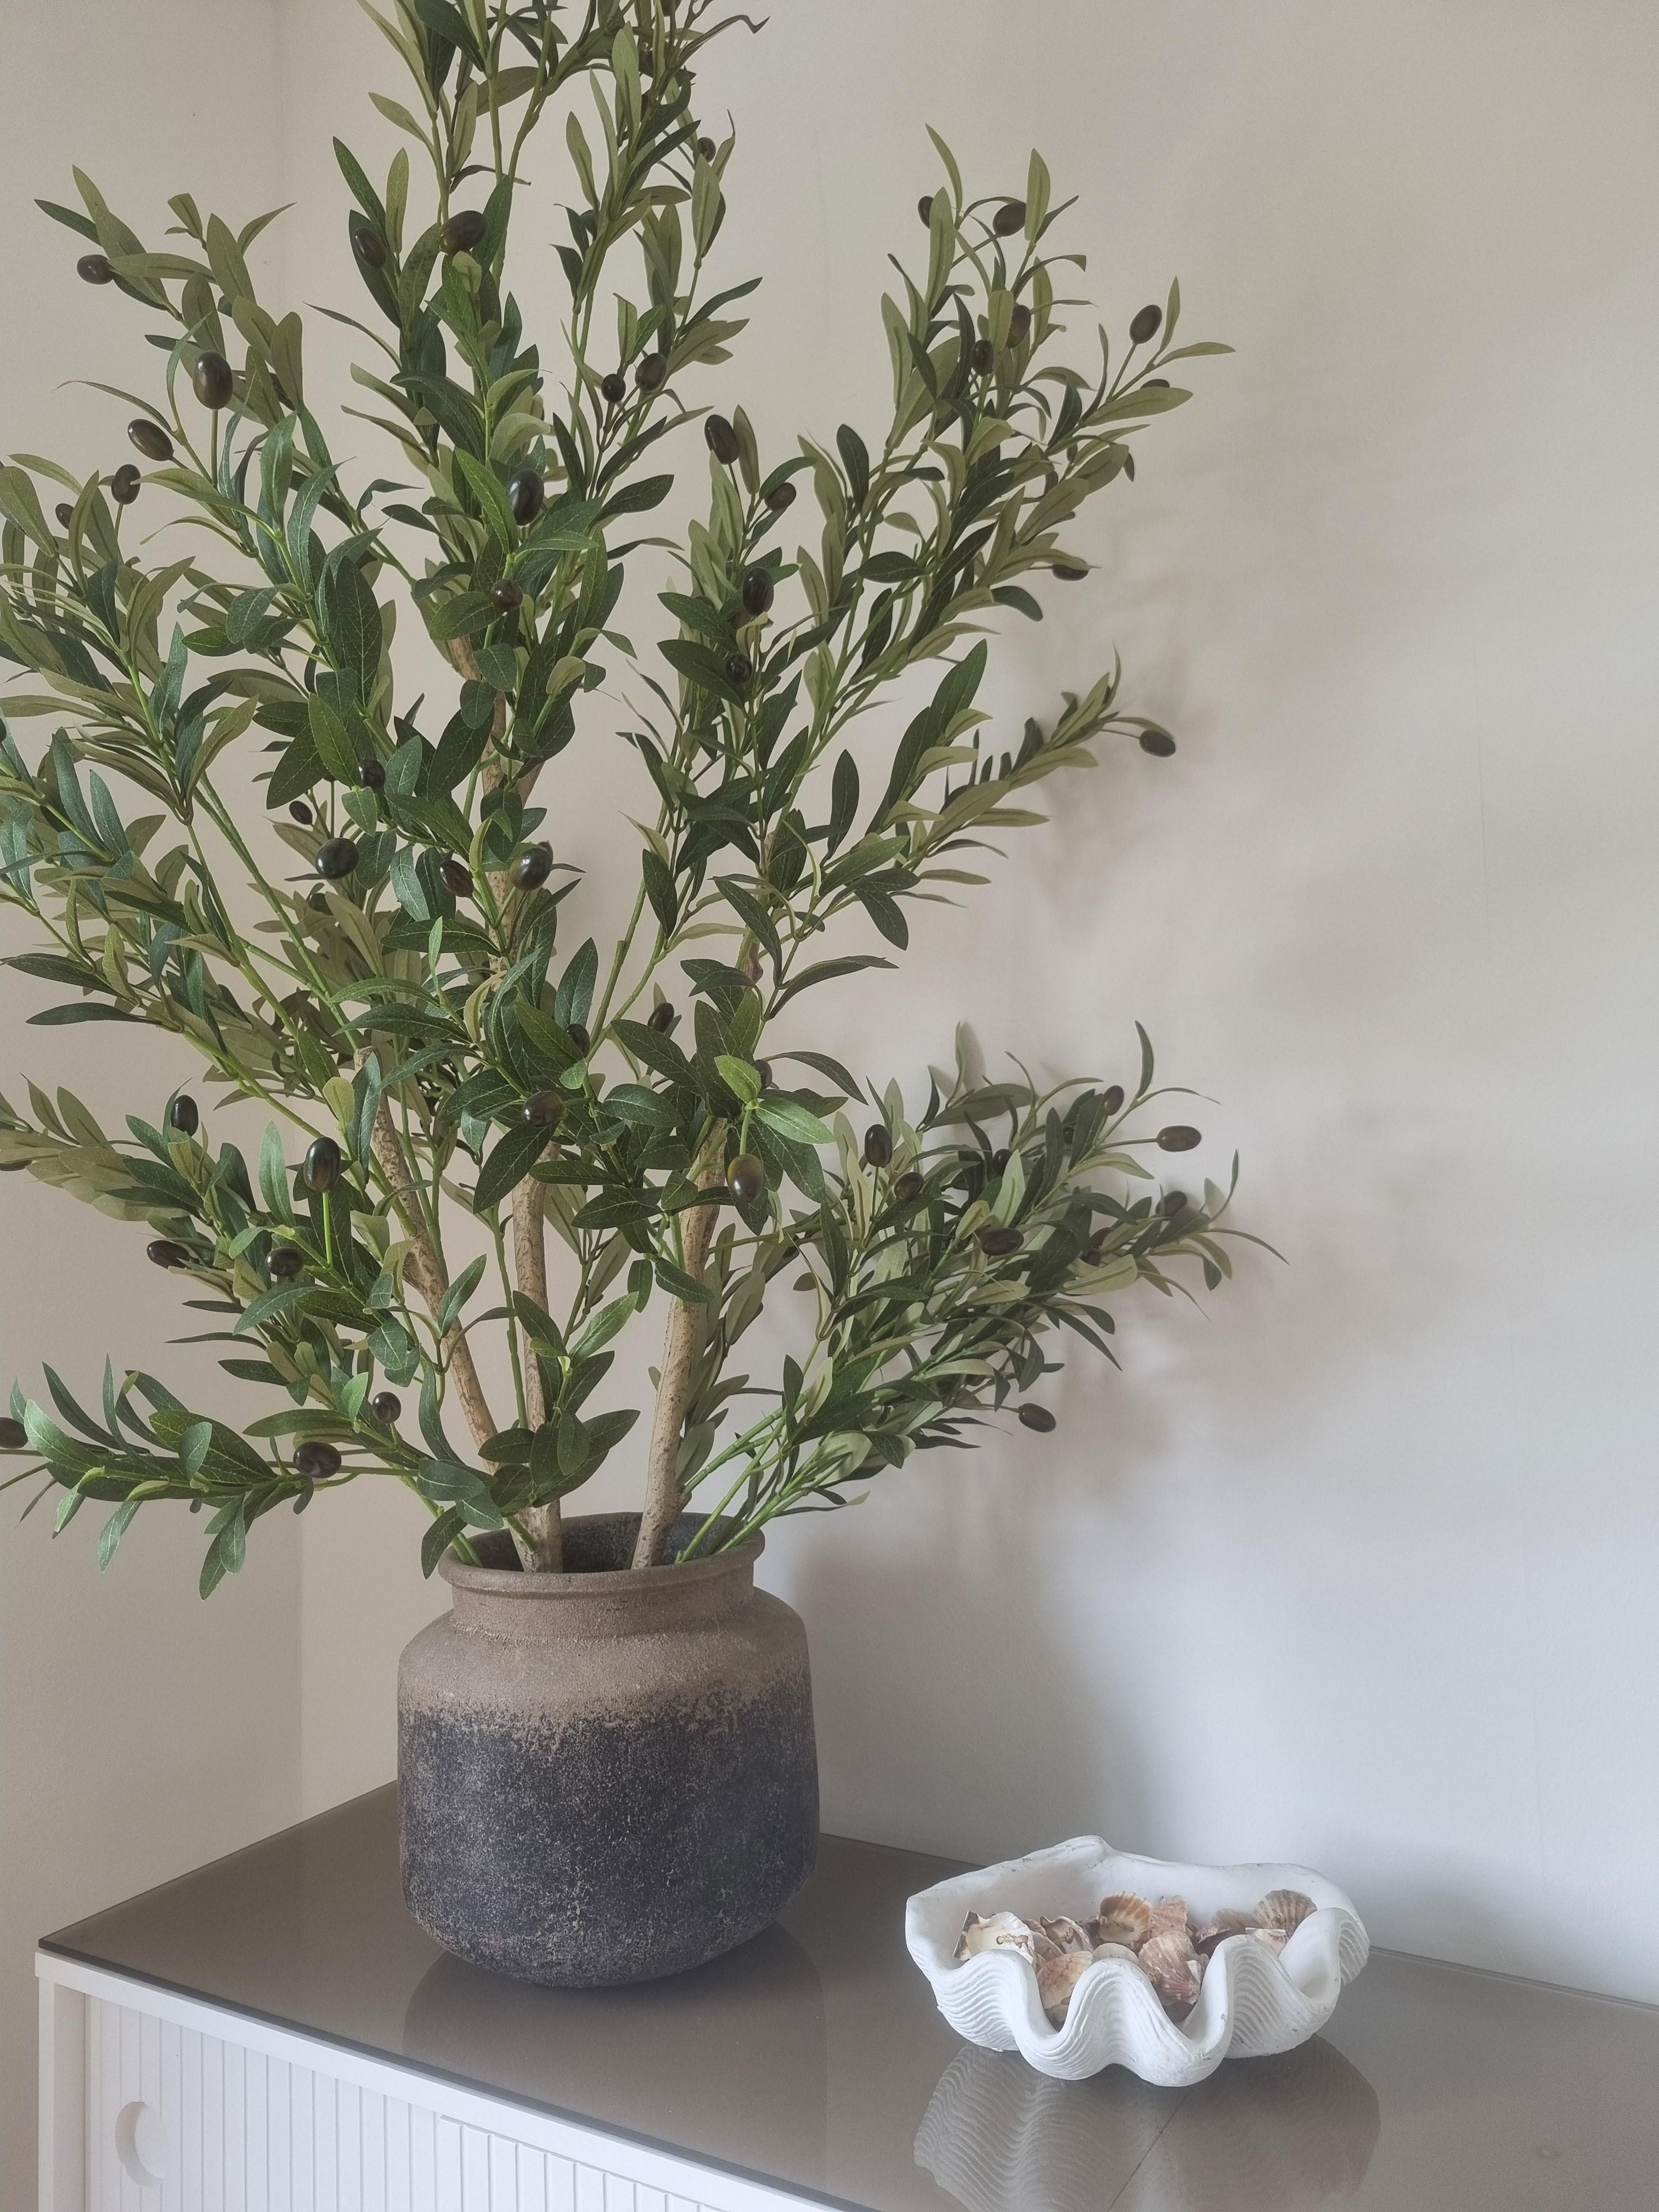 #olivenbaum #mediterranedeko #sommerinterior #sommer